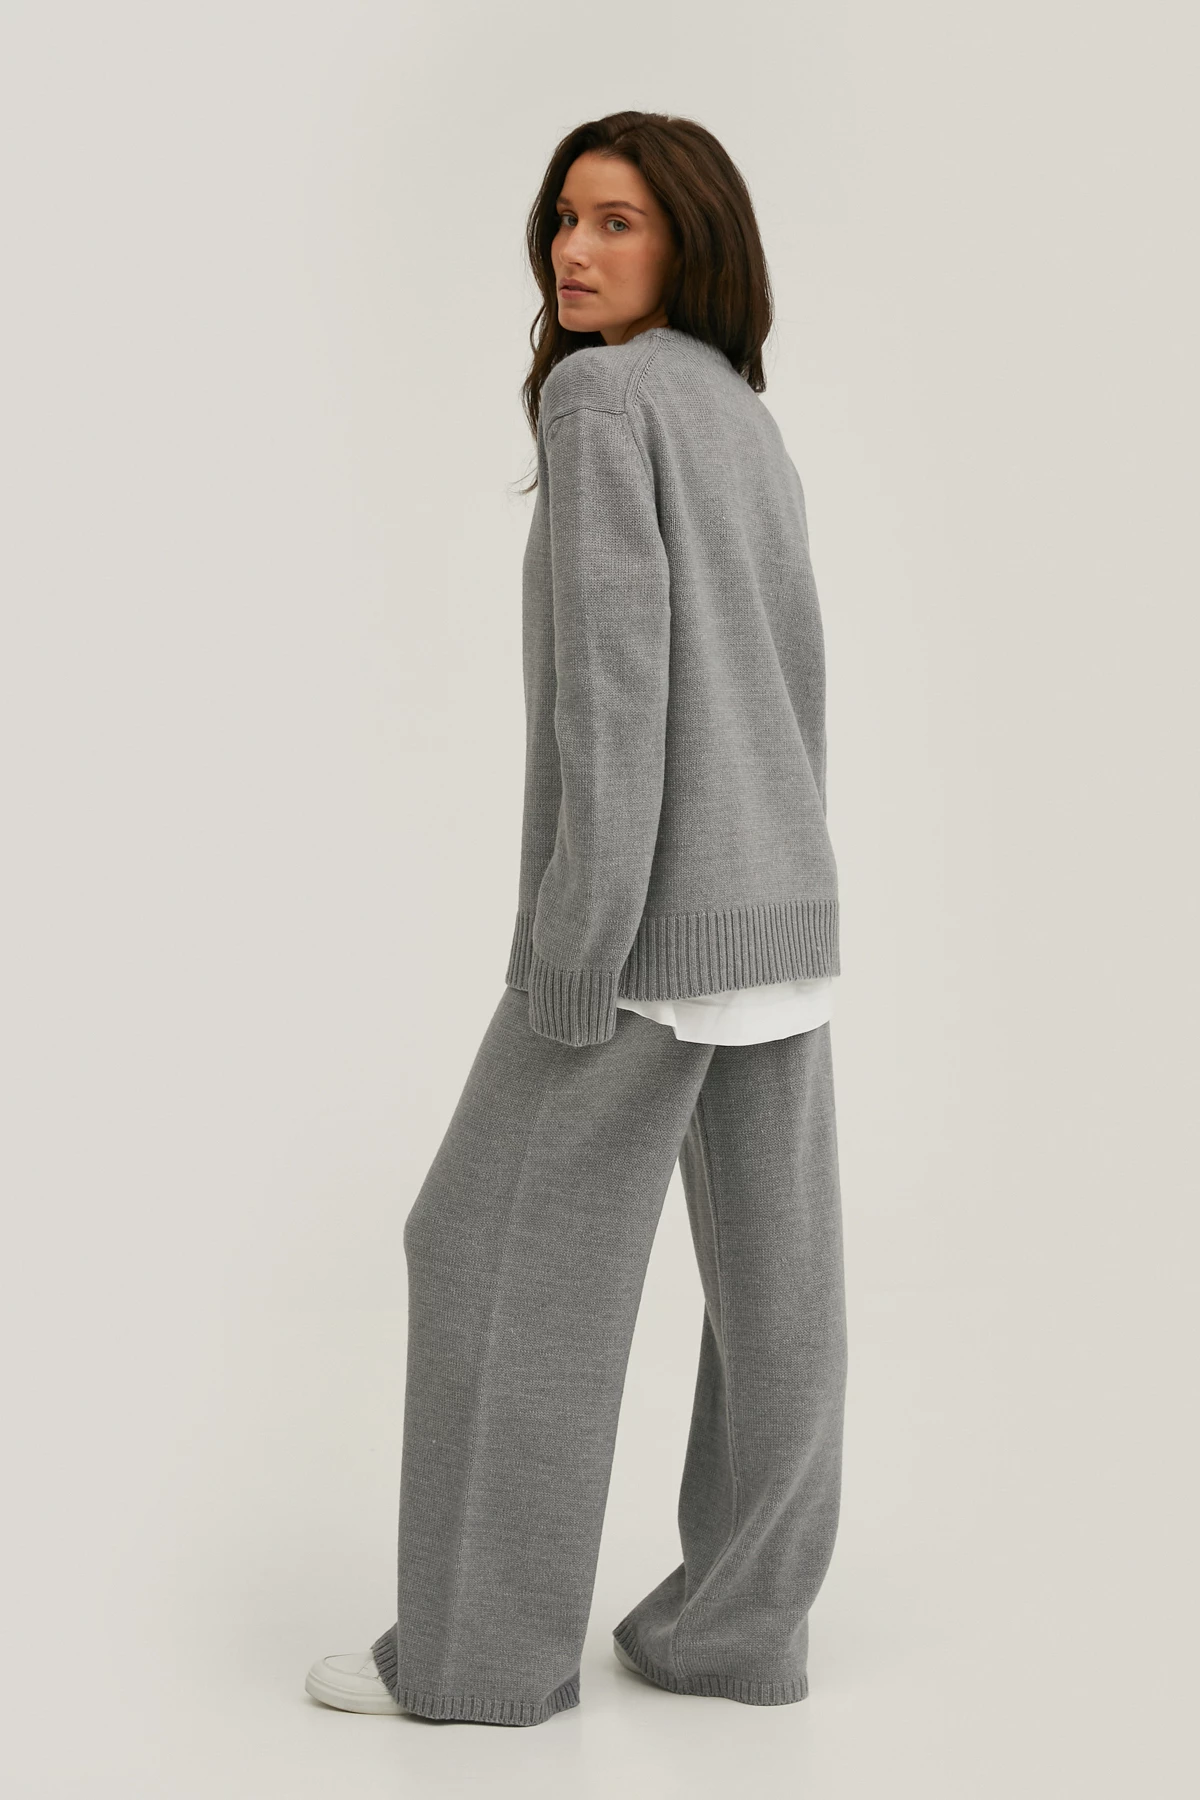 В’язаний светр з вовни мериноса сірого кольору, фото 3